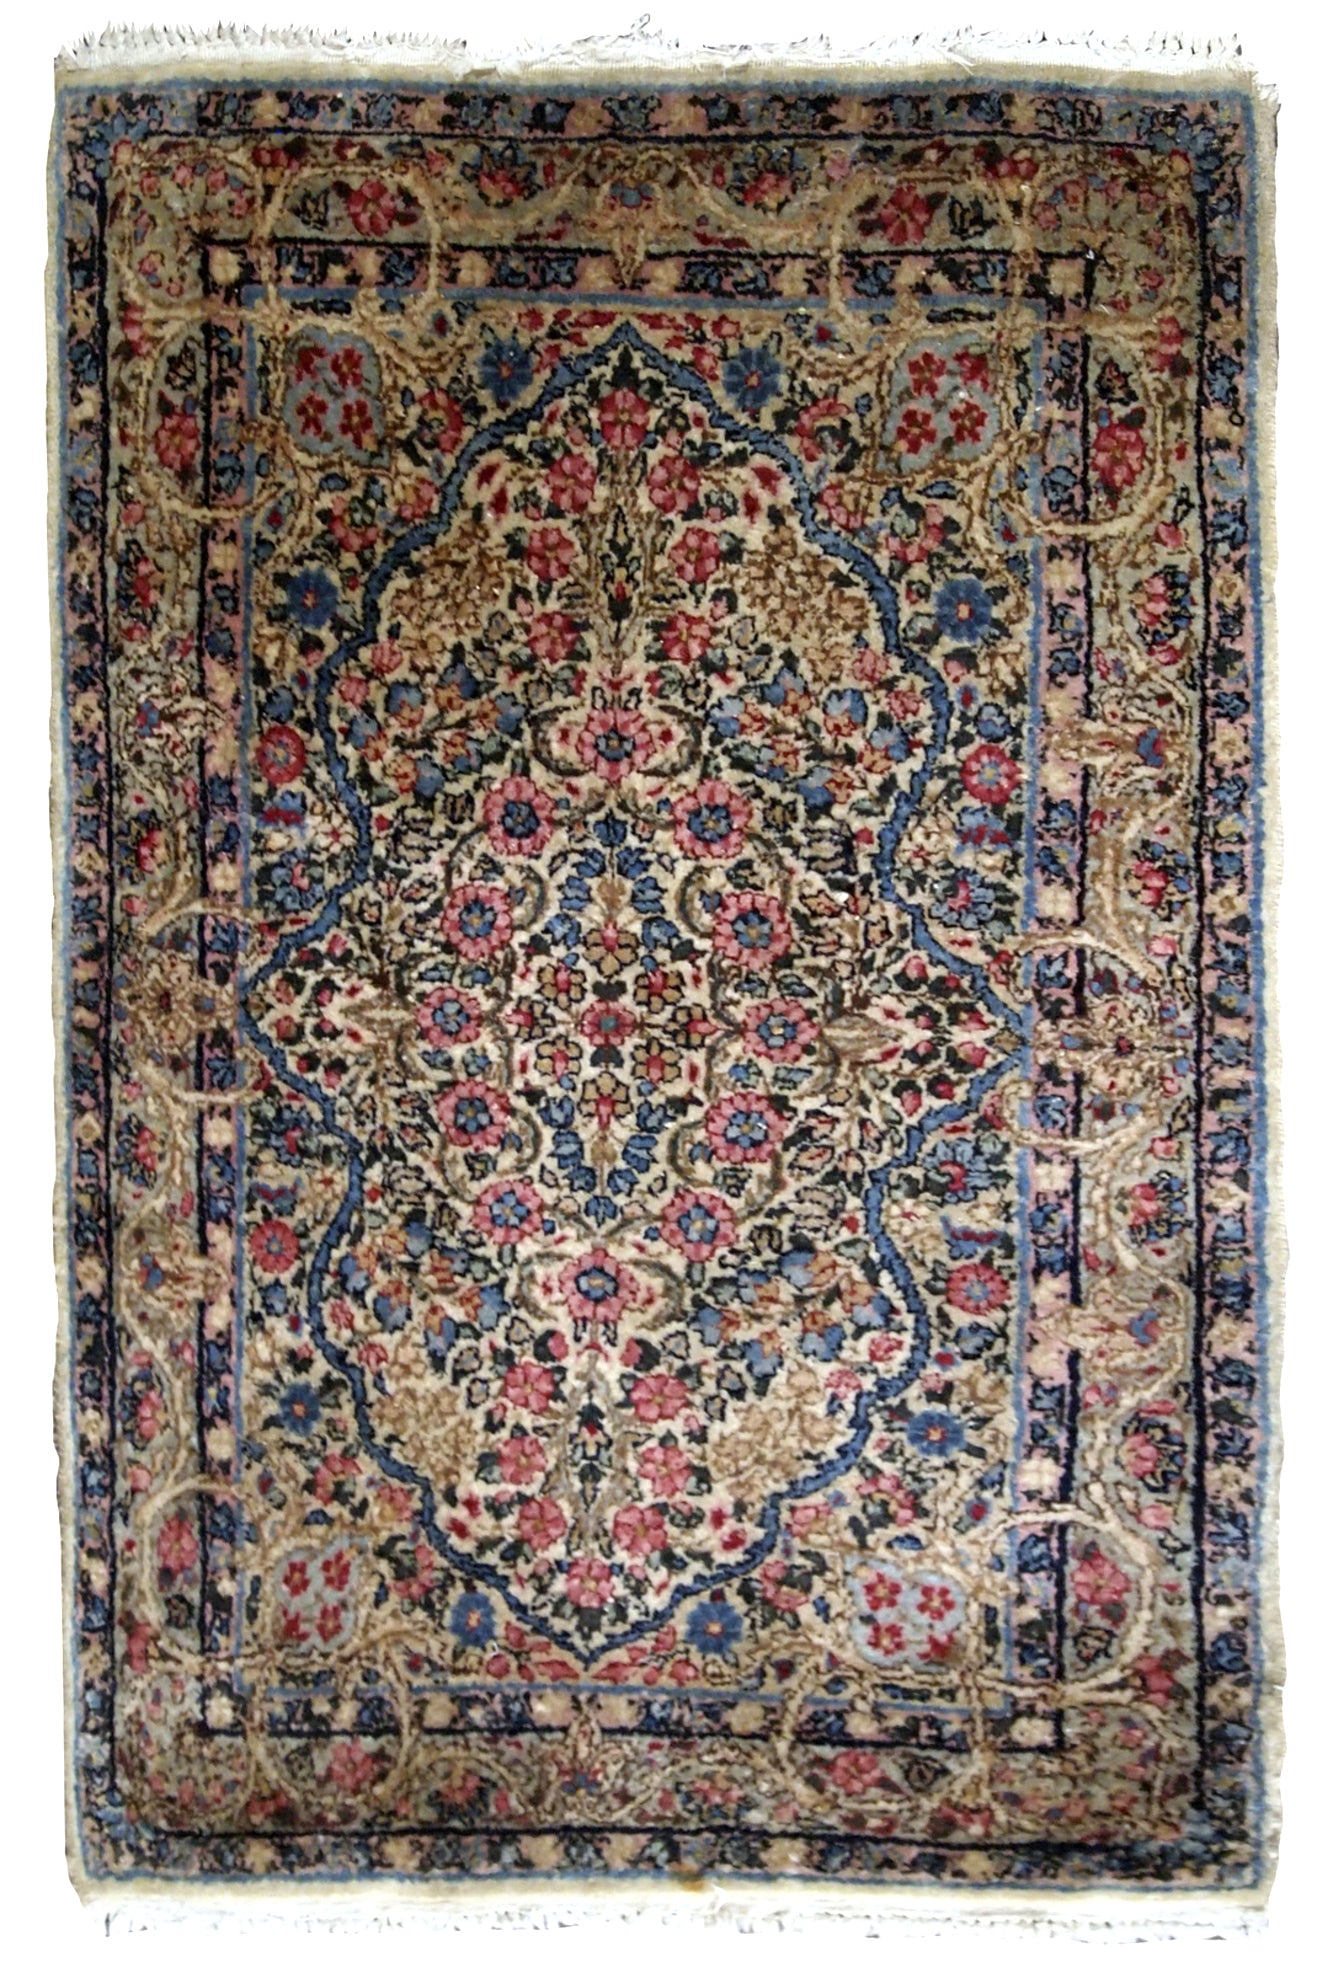 Handmade antique Persian Kerman rug 1920s